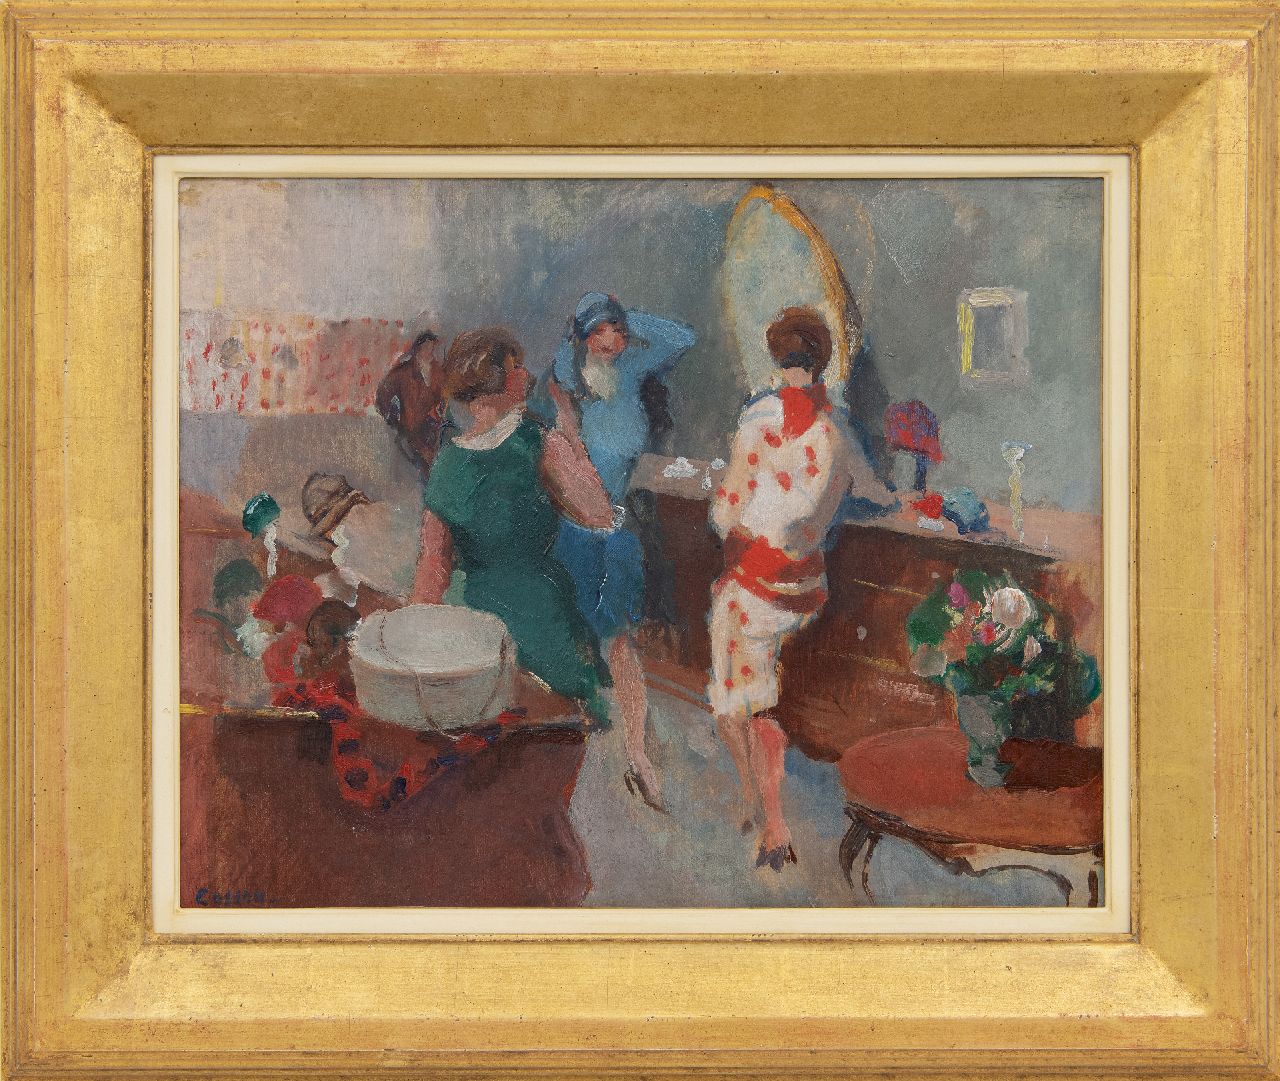 Cosson J.L.M.  | Jean Louis 'Marcel' Cosson | Schilderijen te koop aangeboden | Bij de hoedenmaakster, olieverf op board op doek 36,1 x 45,0 cm, gesigneerd linksonder